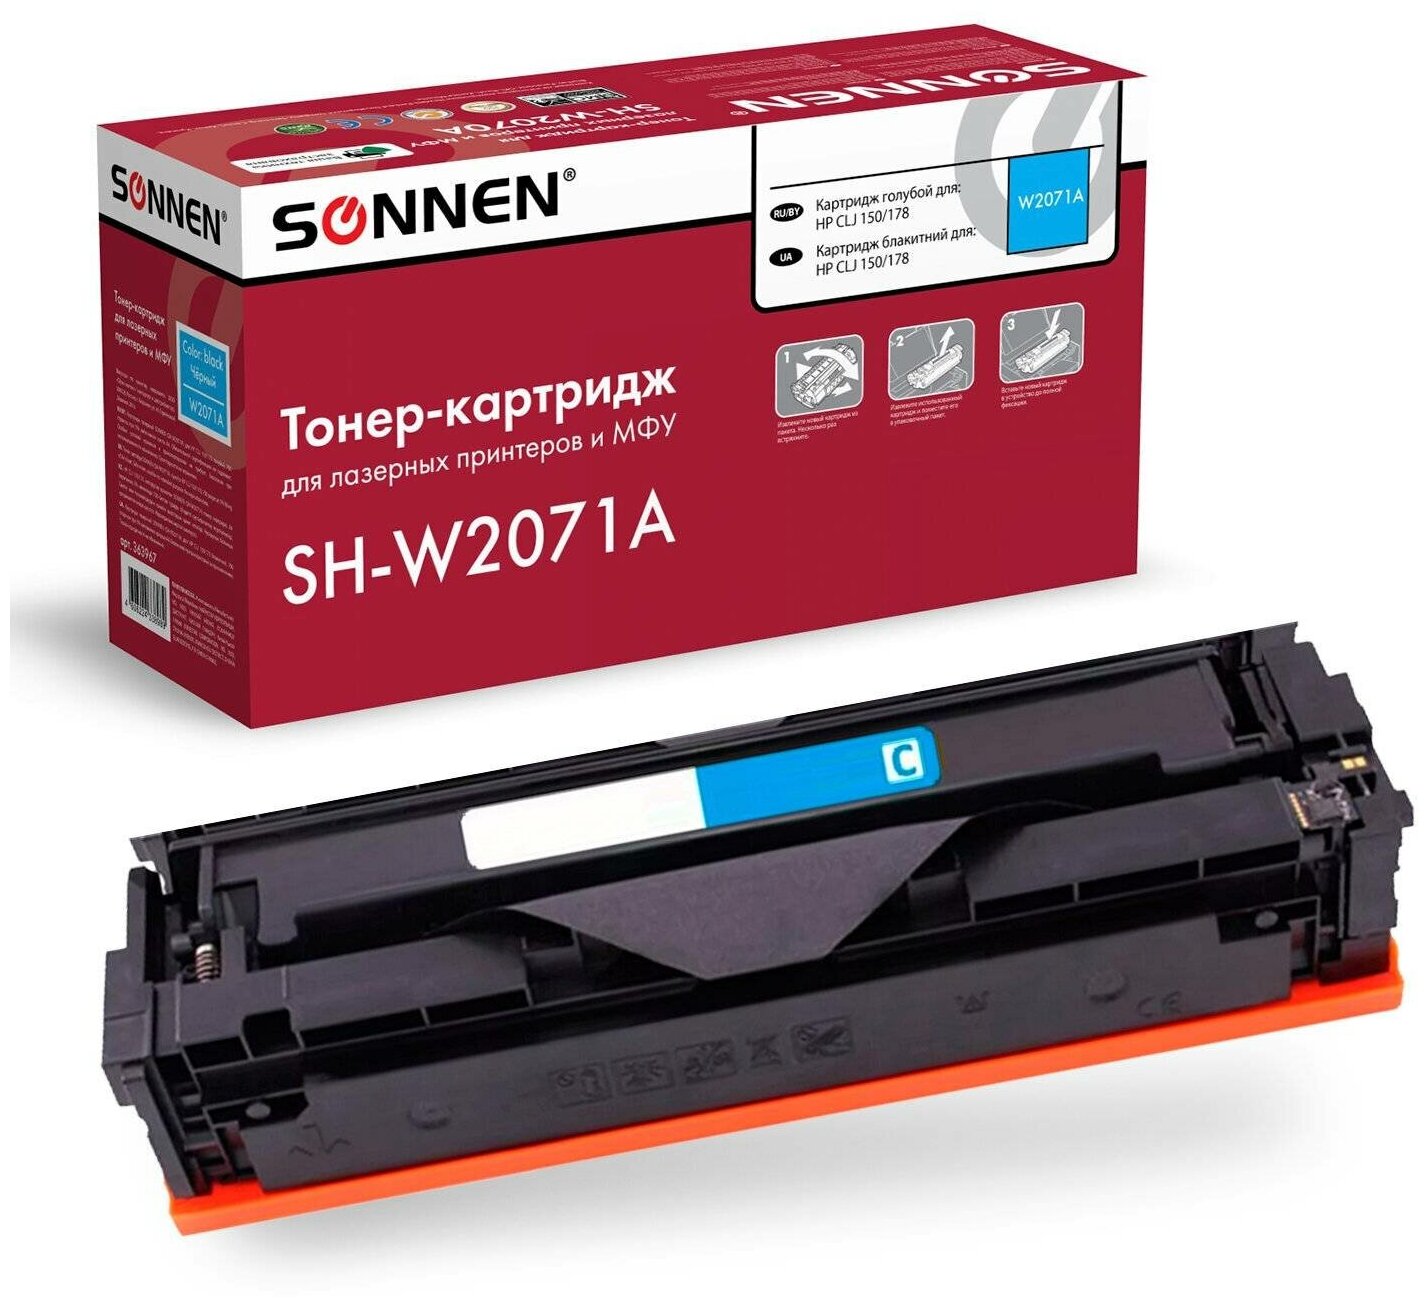 Картридж лазерный SONNEN (SH-W2071A) для HP СLJ 150/178 высшее качество голубой, 700 стр. 363967